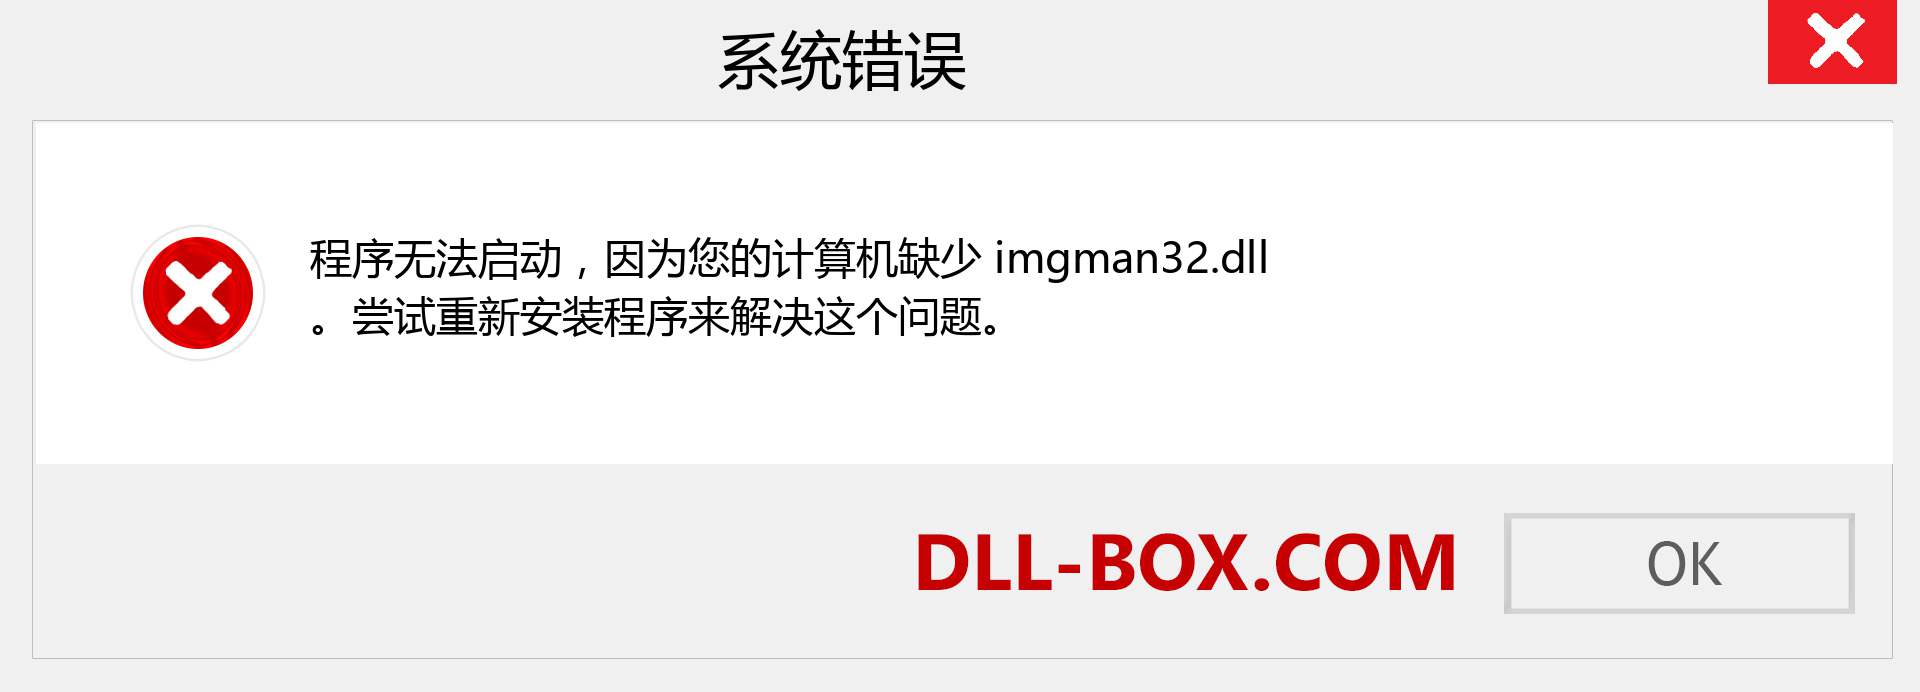 imgman32.dll 文件丢失？。 适用于 Windows 7、8、10 的下载 - 修复 Windows、照片、图像上的 imgman32 dll 丢失错误